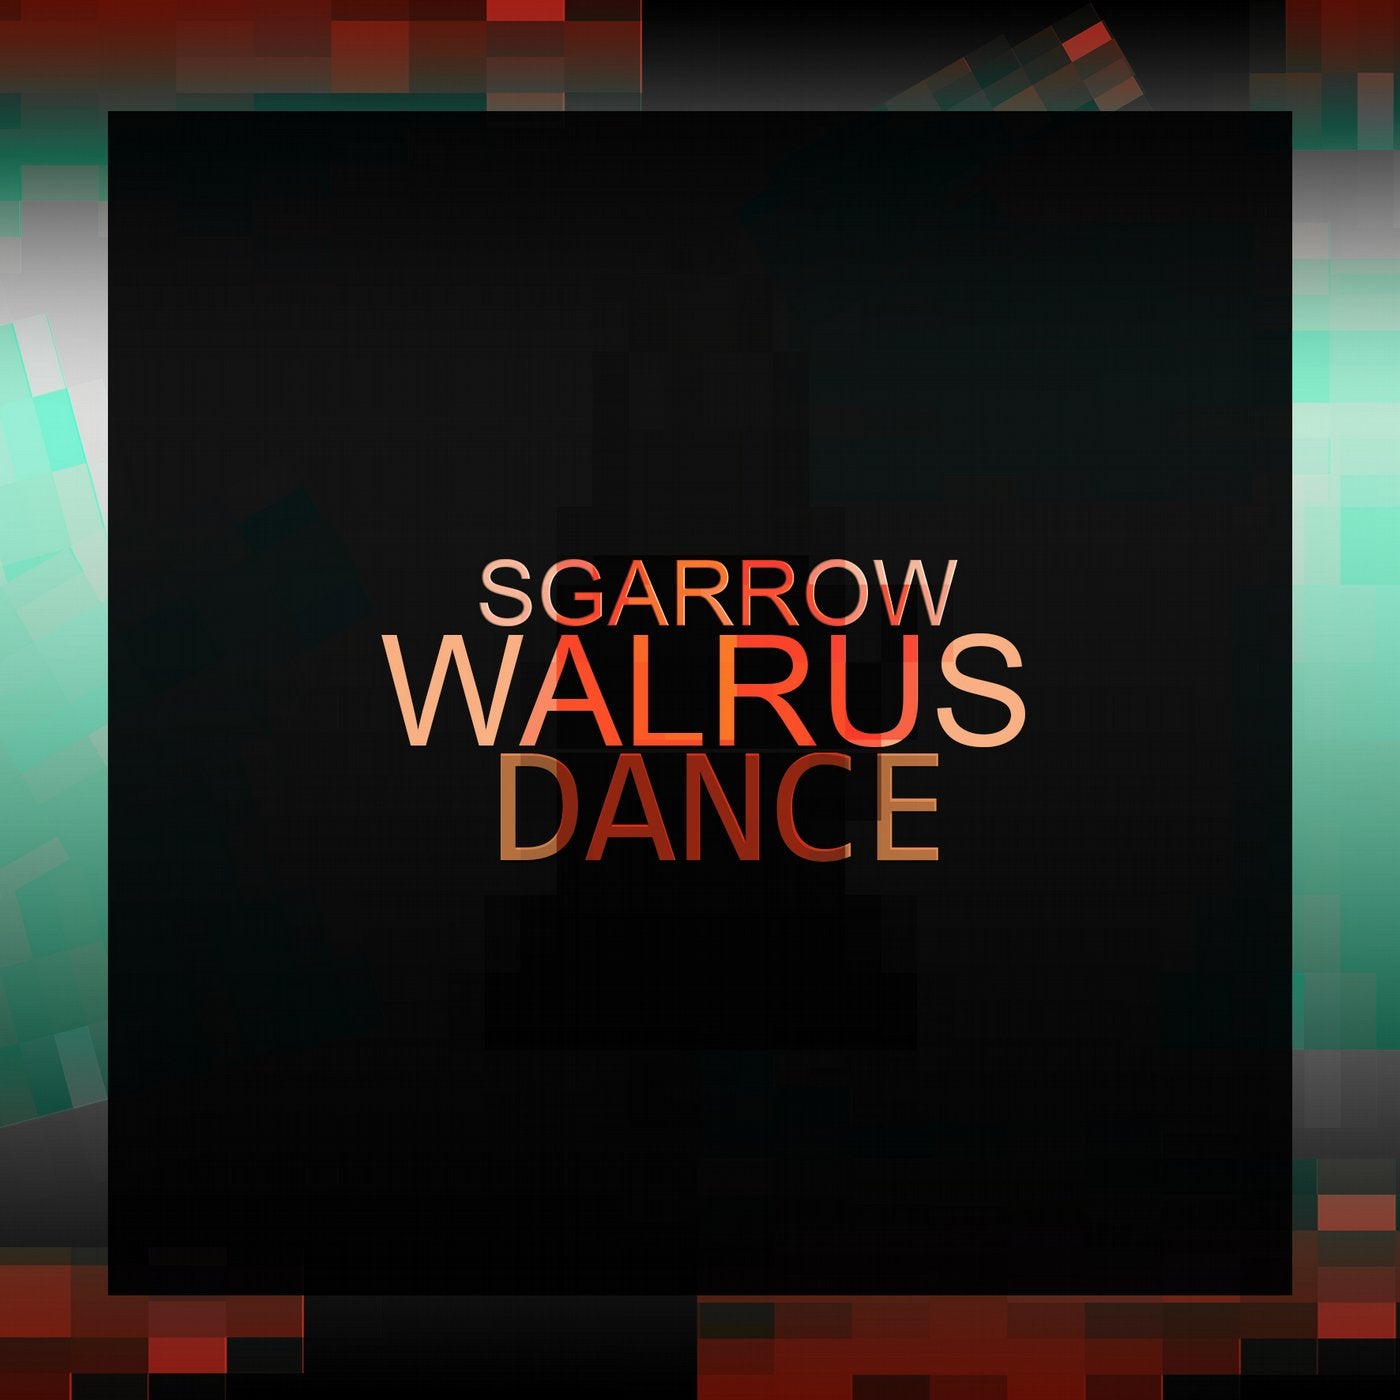 Walrus Dance